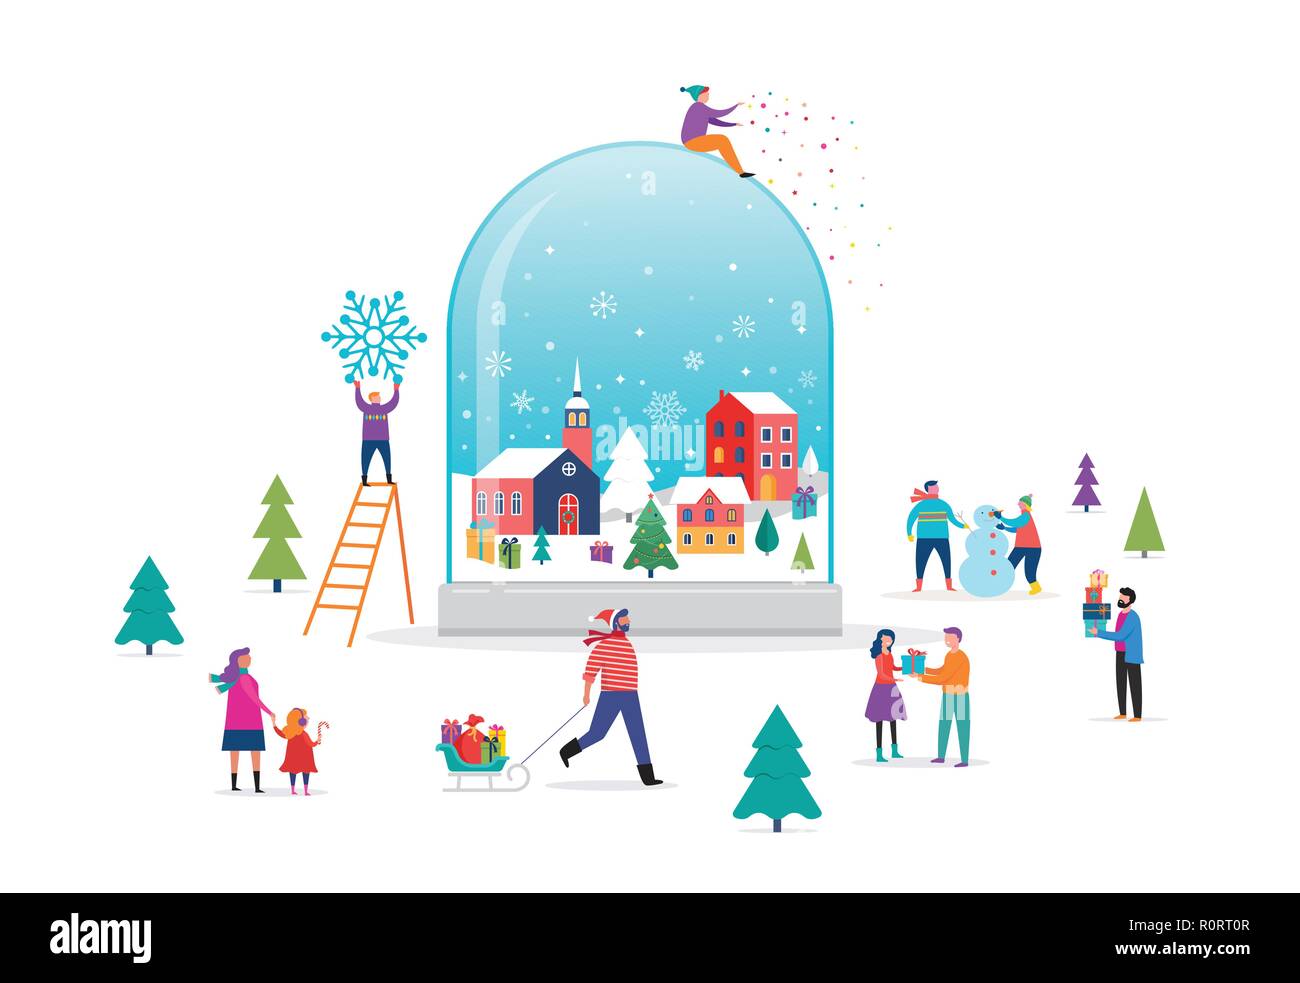 Buon Natale, Winter Wonderland di scena in un mondo di neve con piccole, giovani uomini e donne, famiglie avendo divertimento nella neve, sci, snowboard, slittino, pattinaggio su ghiaccio, concetto illustrazione vettoriale Illustrazione Vettoriale